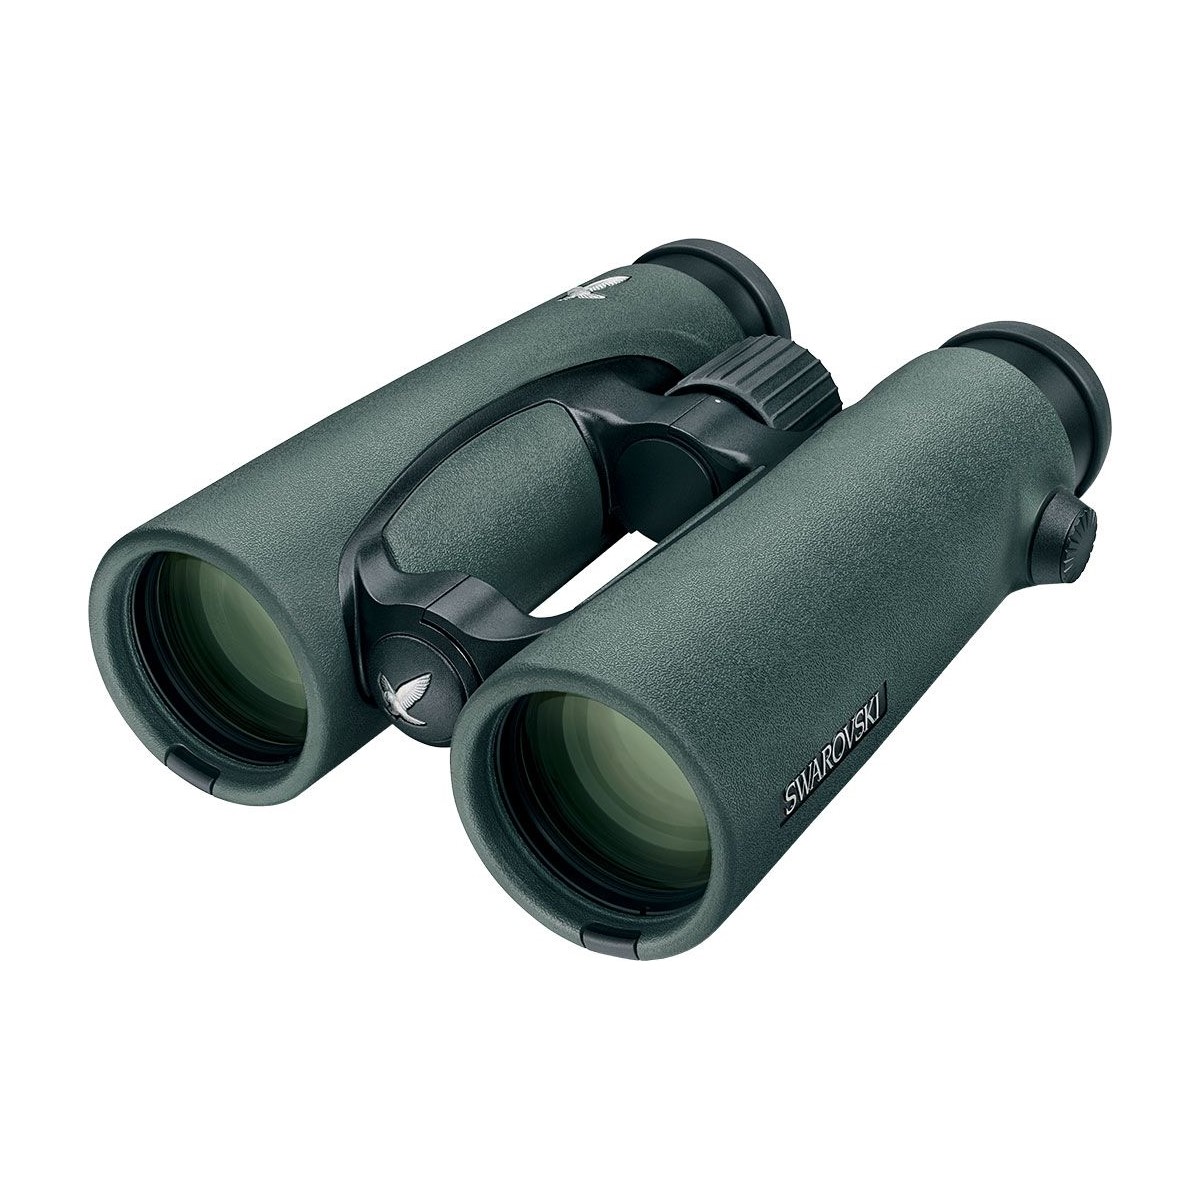 Swarovski EL Field Pro Binoculars